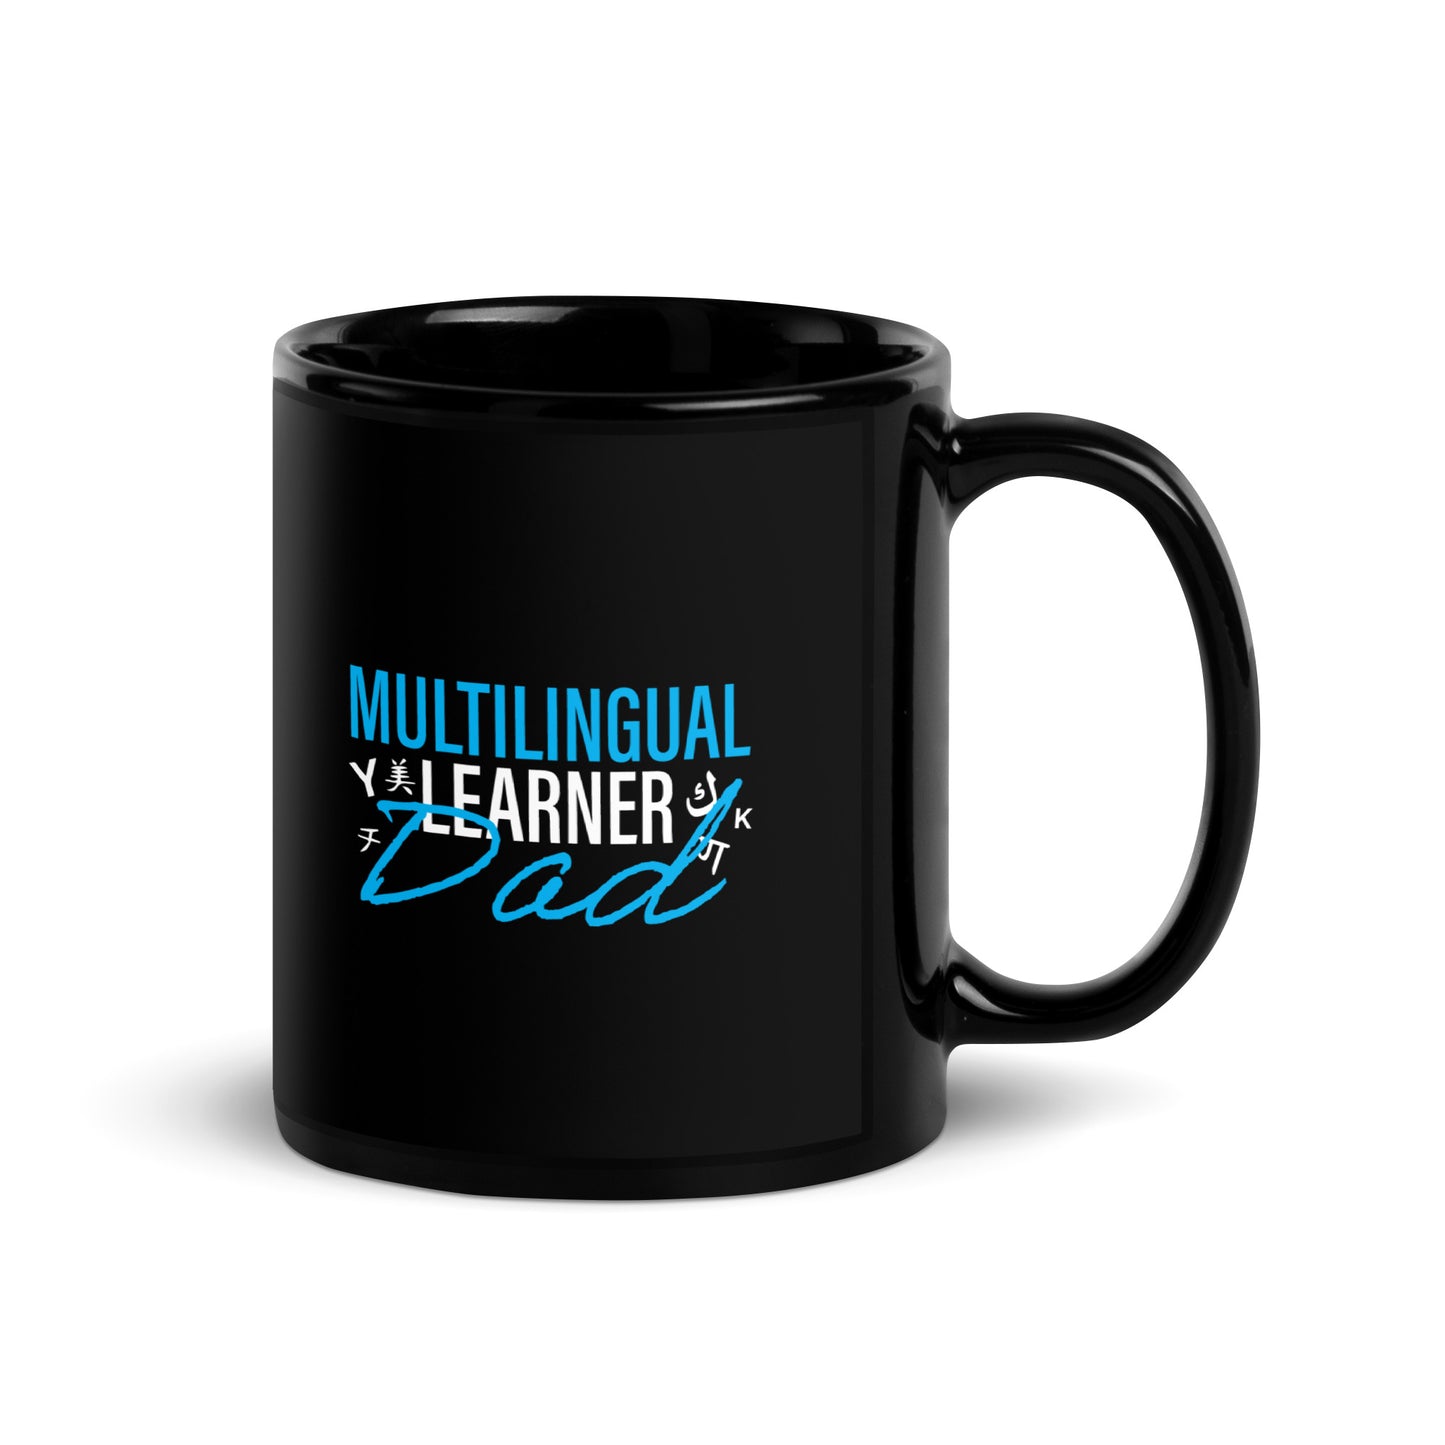 Multilingual Learner DAD Black Glossy Mug.